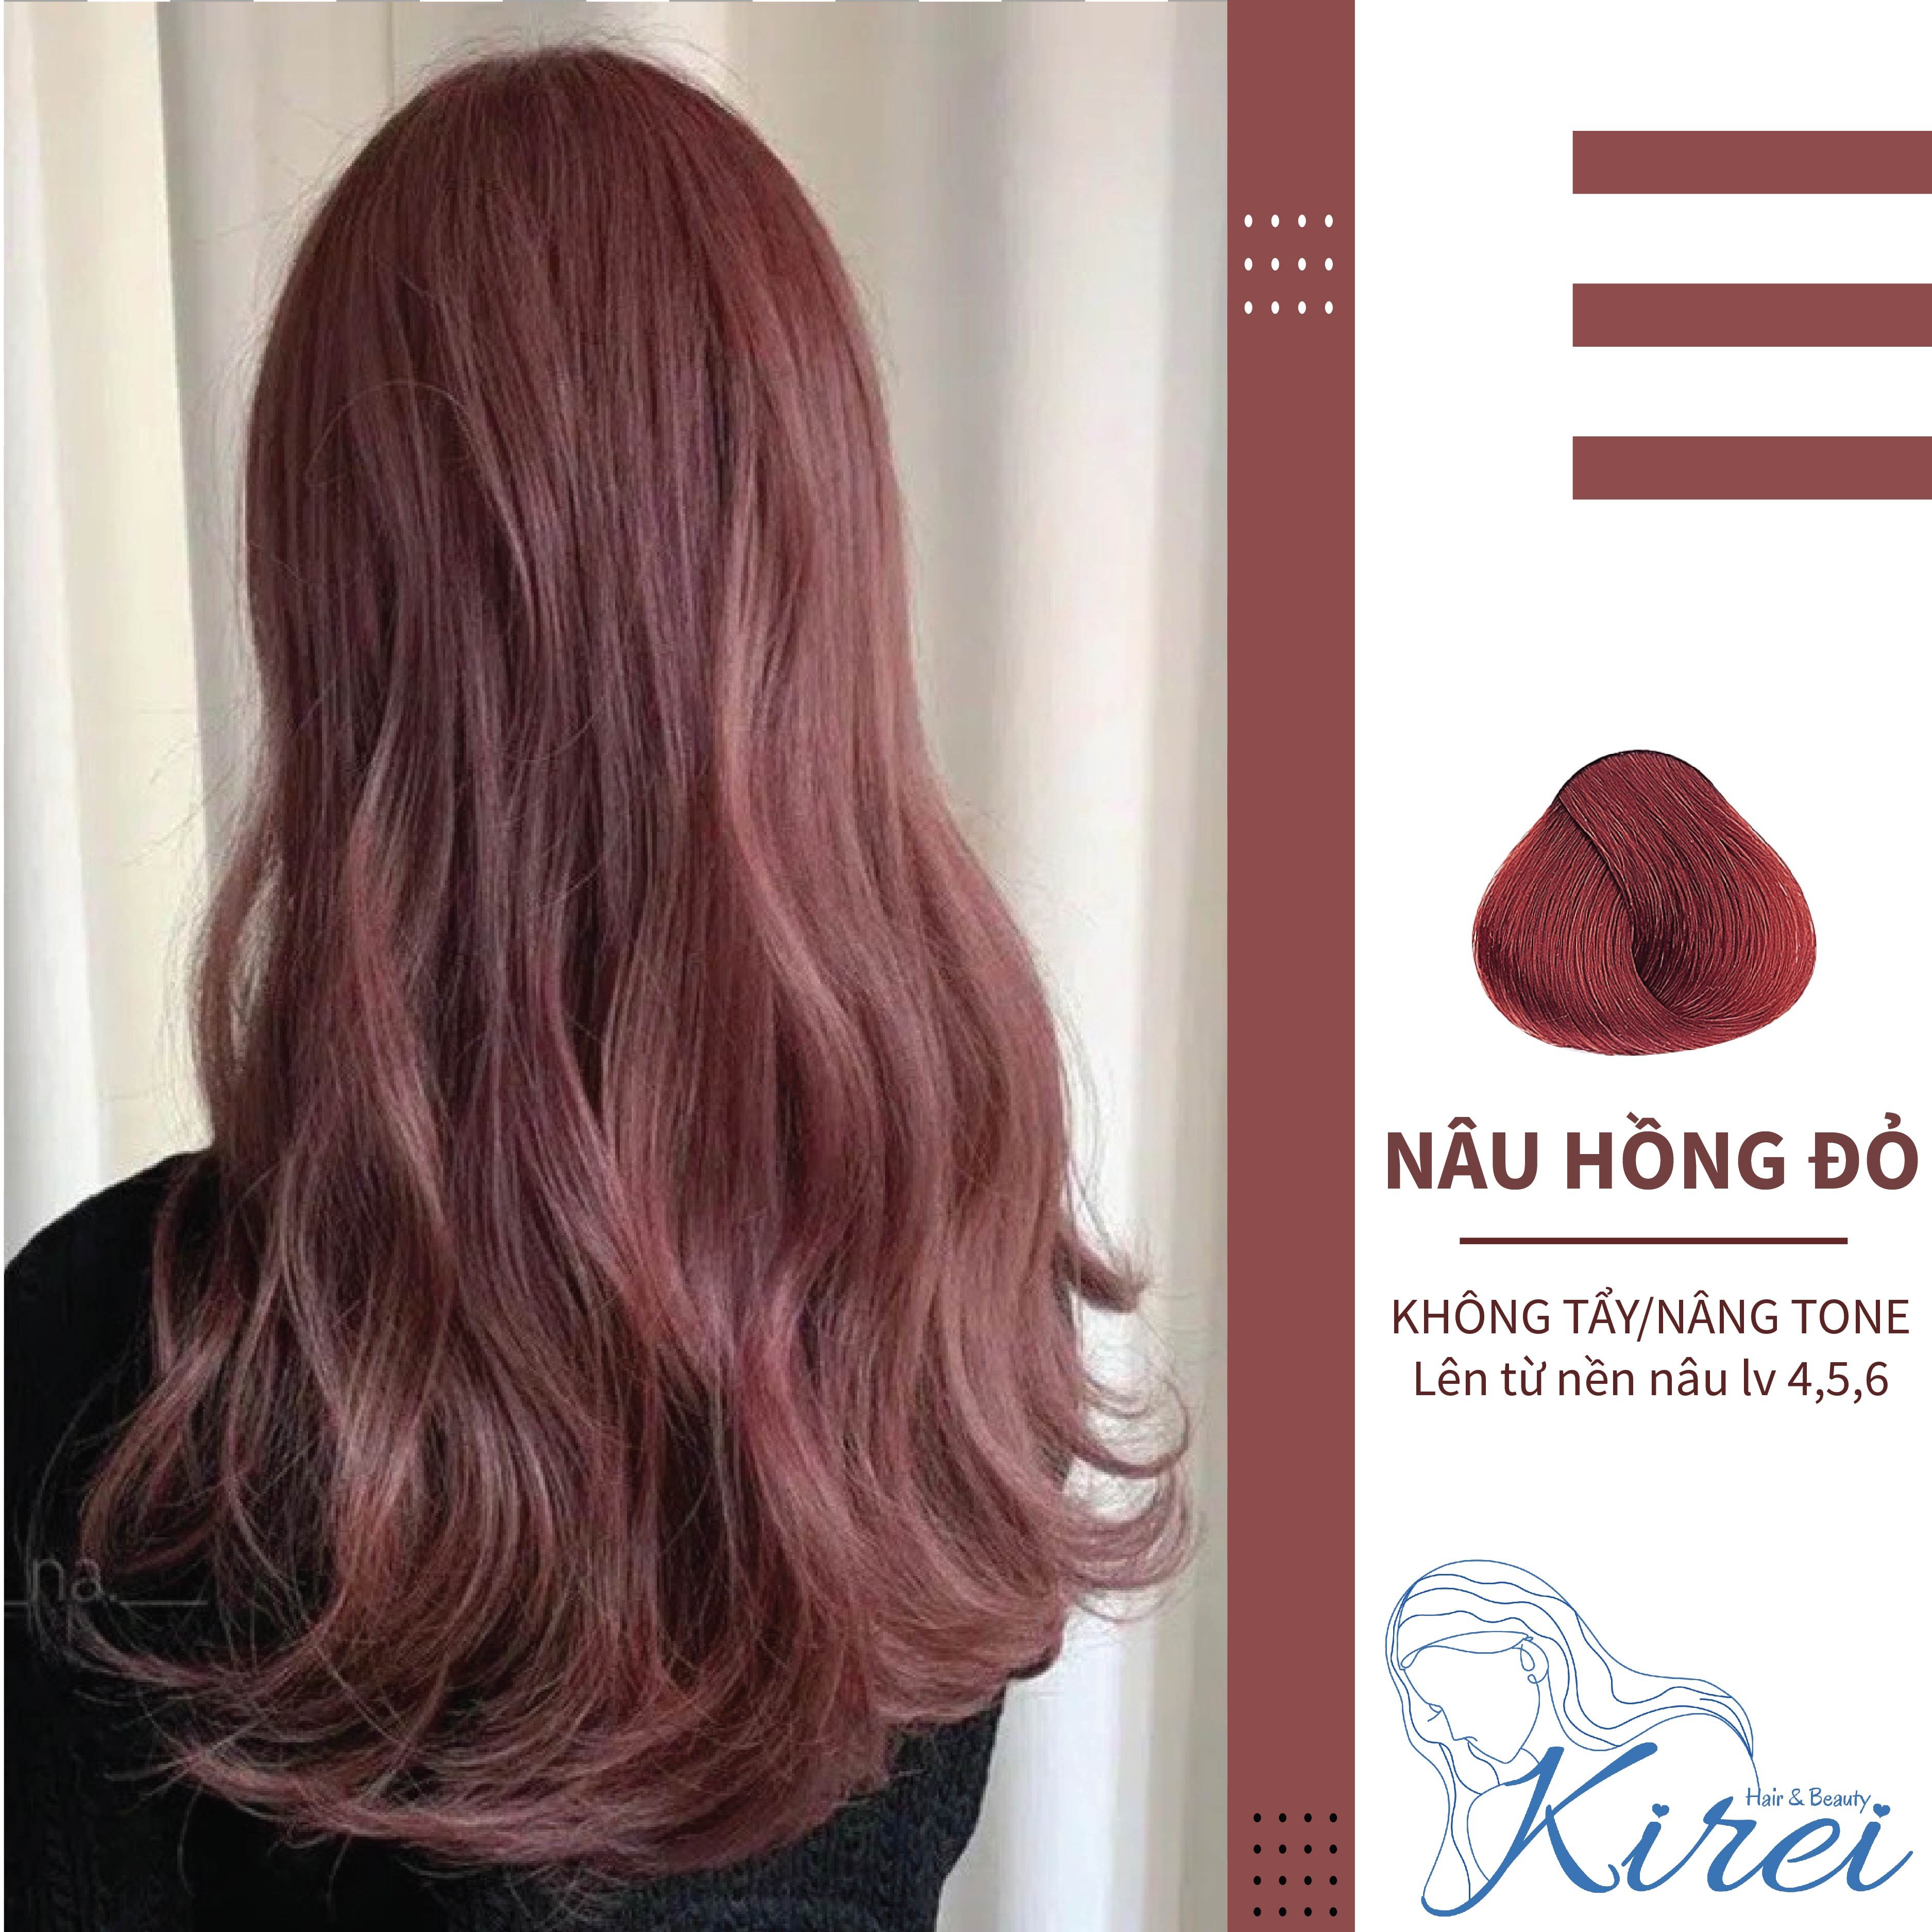 Với sản phẩm thuốc nhuộm tóc màu NÂU HỒNG ĐỎ KireiHair, bạn không chỉ nhuộm tóc một màu đơn giản mà còn có thể tạo ra các sắc thái khác nhau cho mái tóc của mình. Sản phẩm này đảm bảo sự bền màu và bảo vệ tóc của bạn trong quá trình nhuộm.